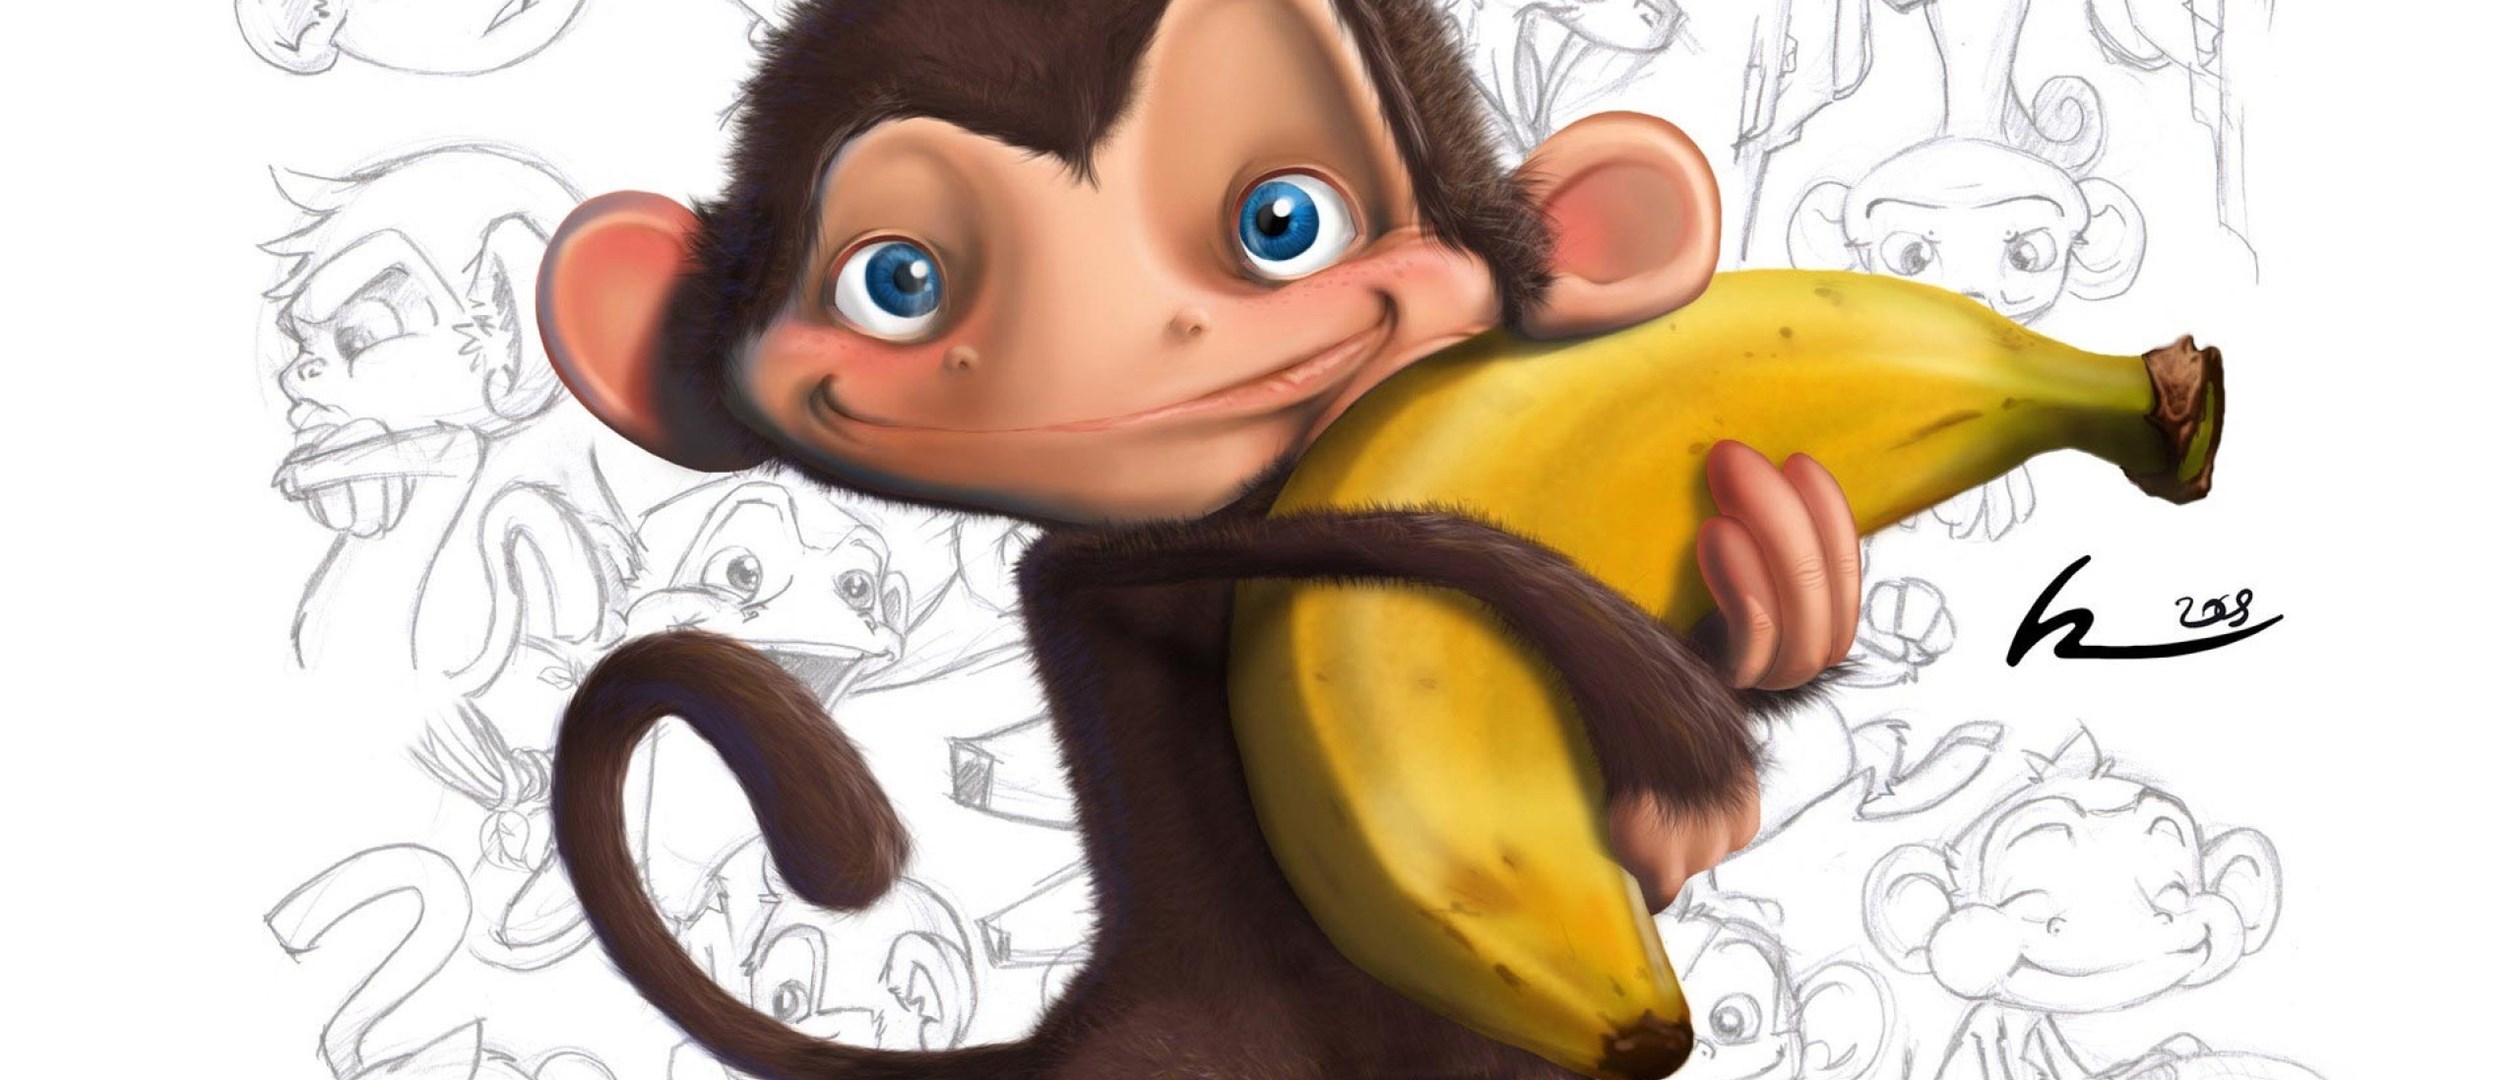 Обезьяна подавилася бананом. Обезьяна с бананом. Обезьяна рисунок. J,tpmzyf c ,fuyfyfvb. Веселая обезьяна с бананом.